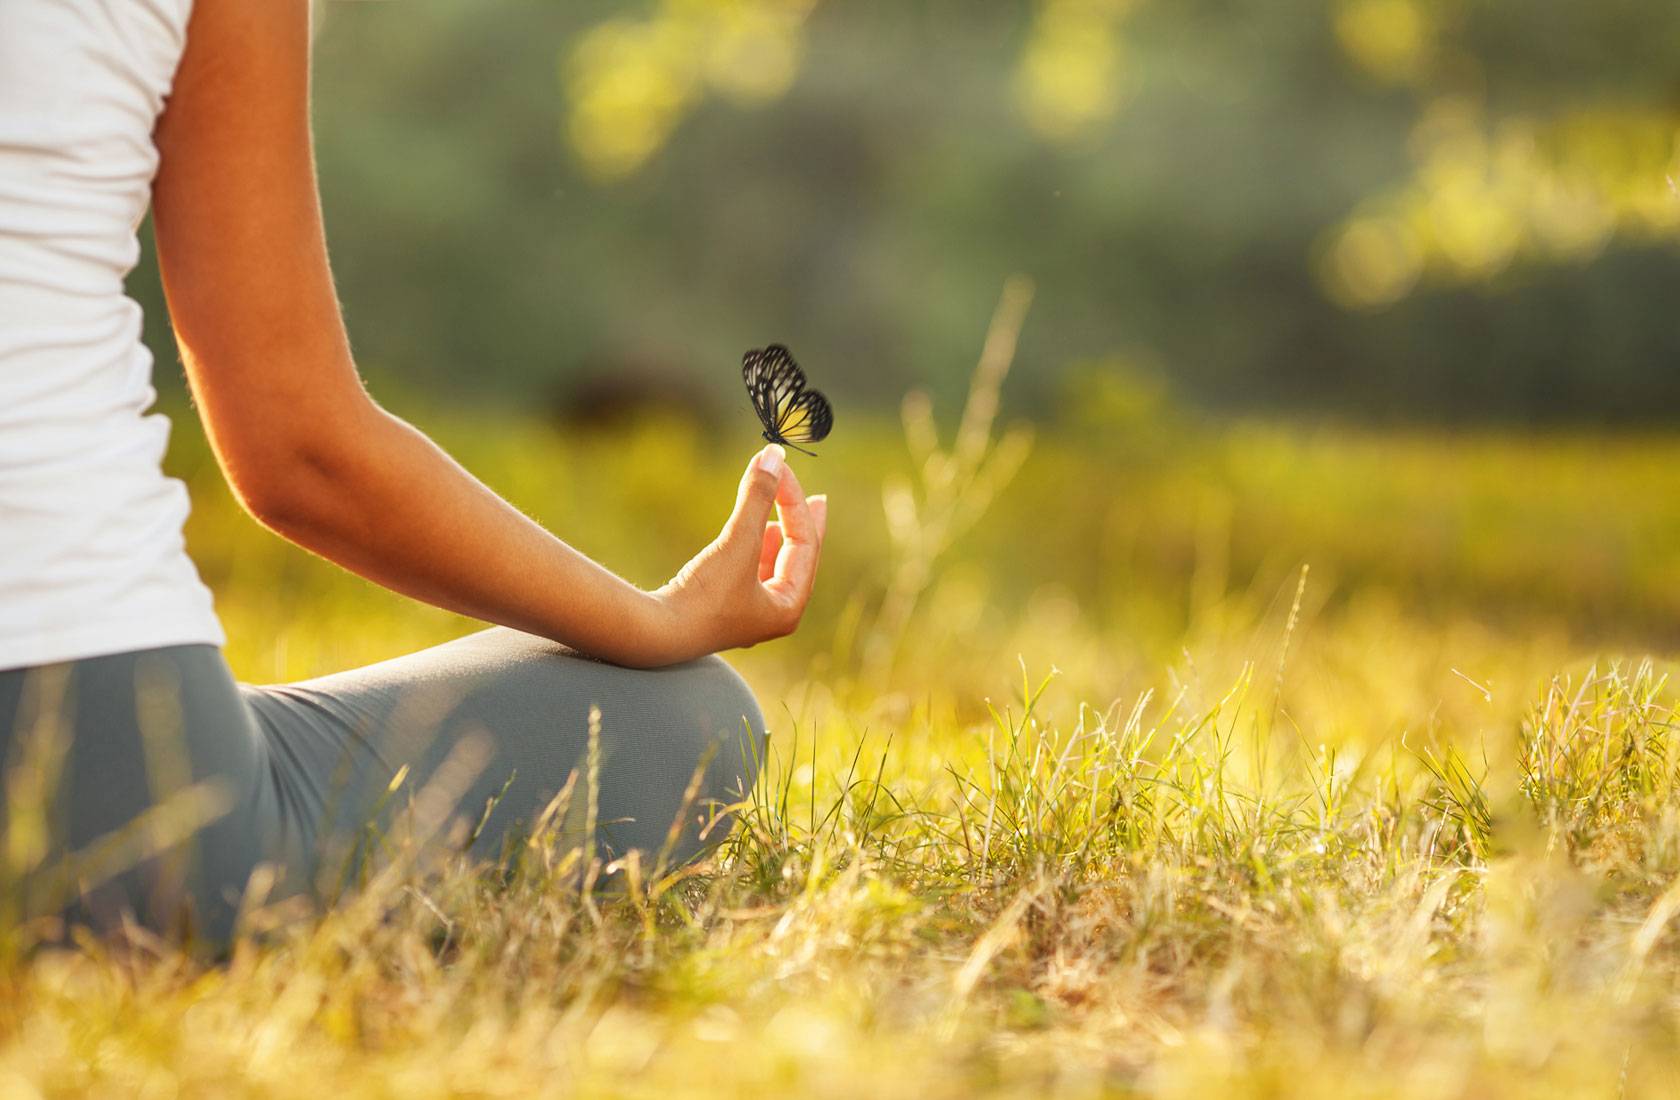 Медитация для успокоения нервной системы и психики - способы успокоить нервы и убрать страхи